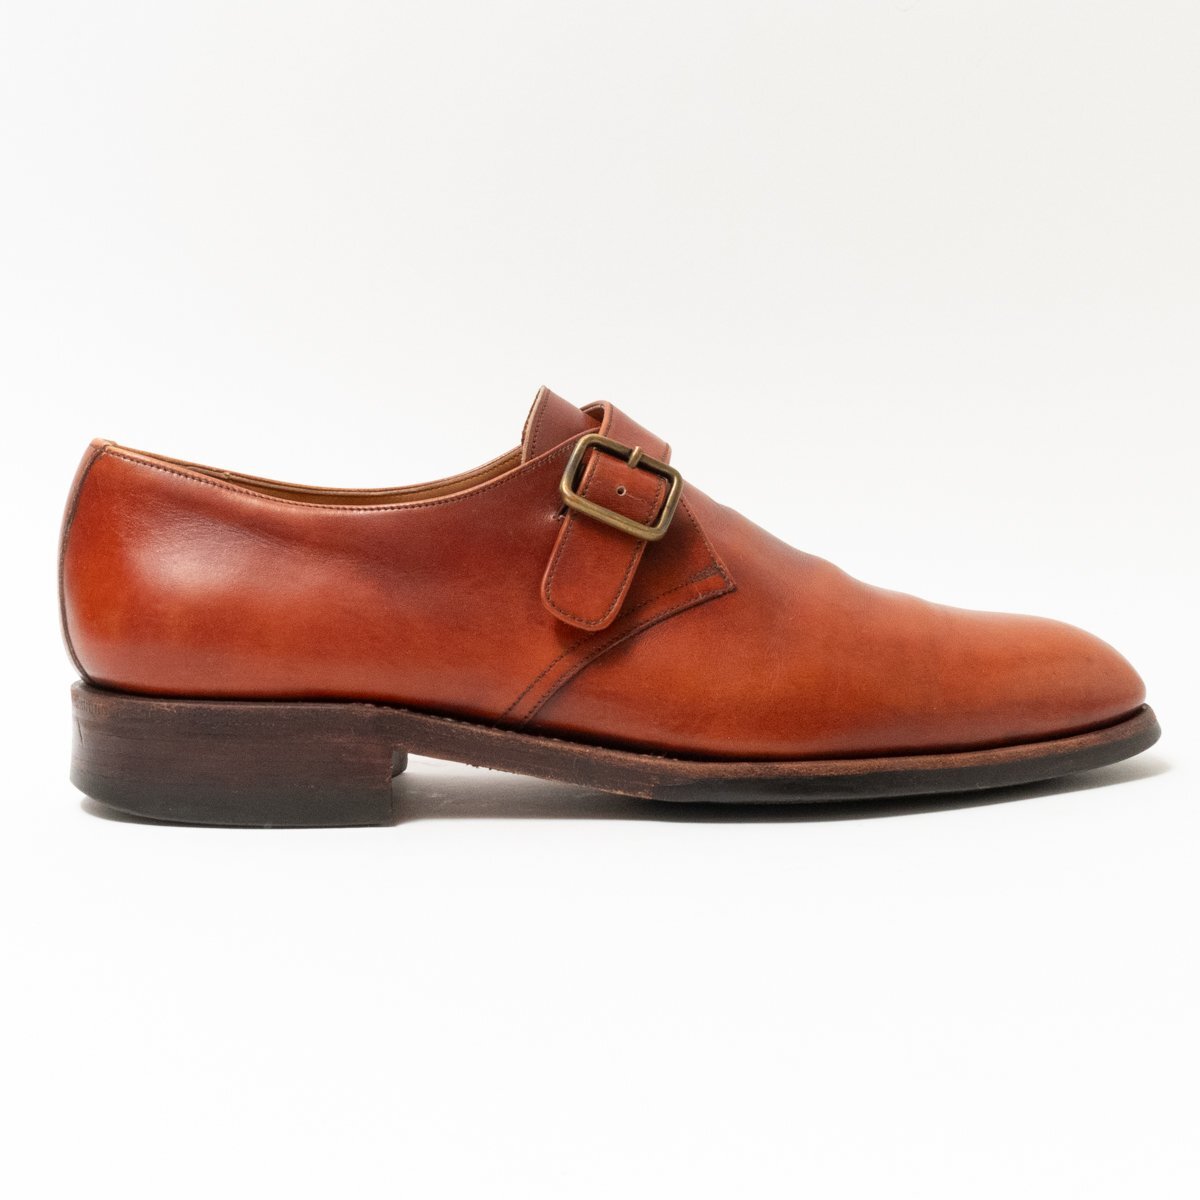 [1 иен старт ]YANKOyanko одиночный monk туфли с ремешками кожа обувь джентльмен обувь мужской 6.5 25cm соответствует Brown кожа натуральная кожа бизнес 